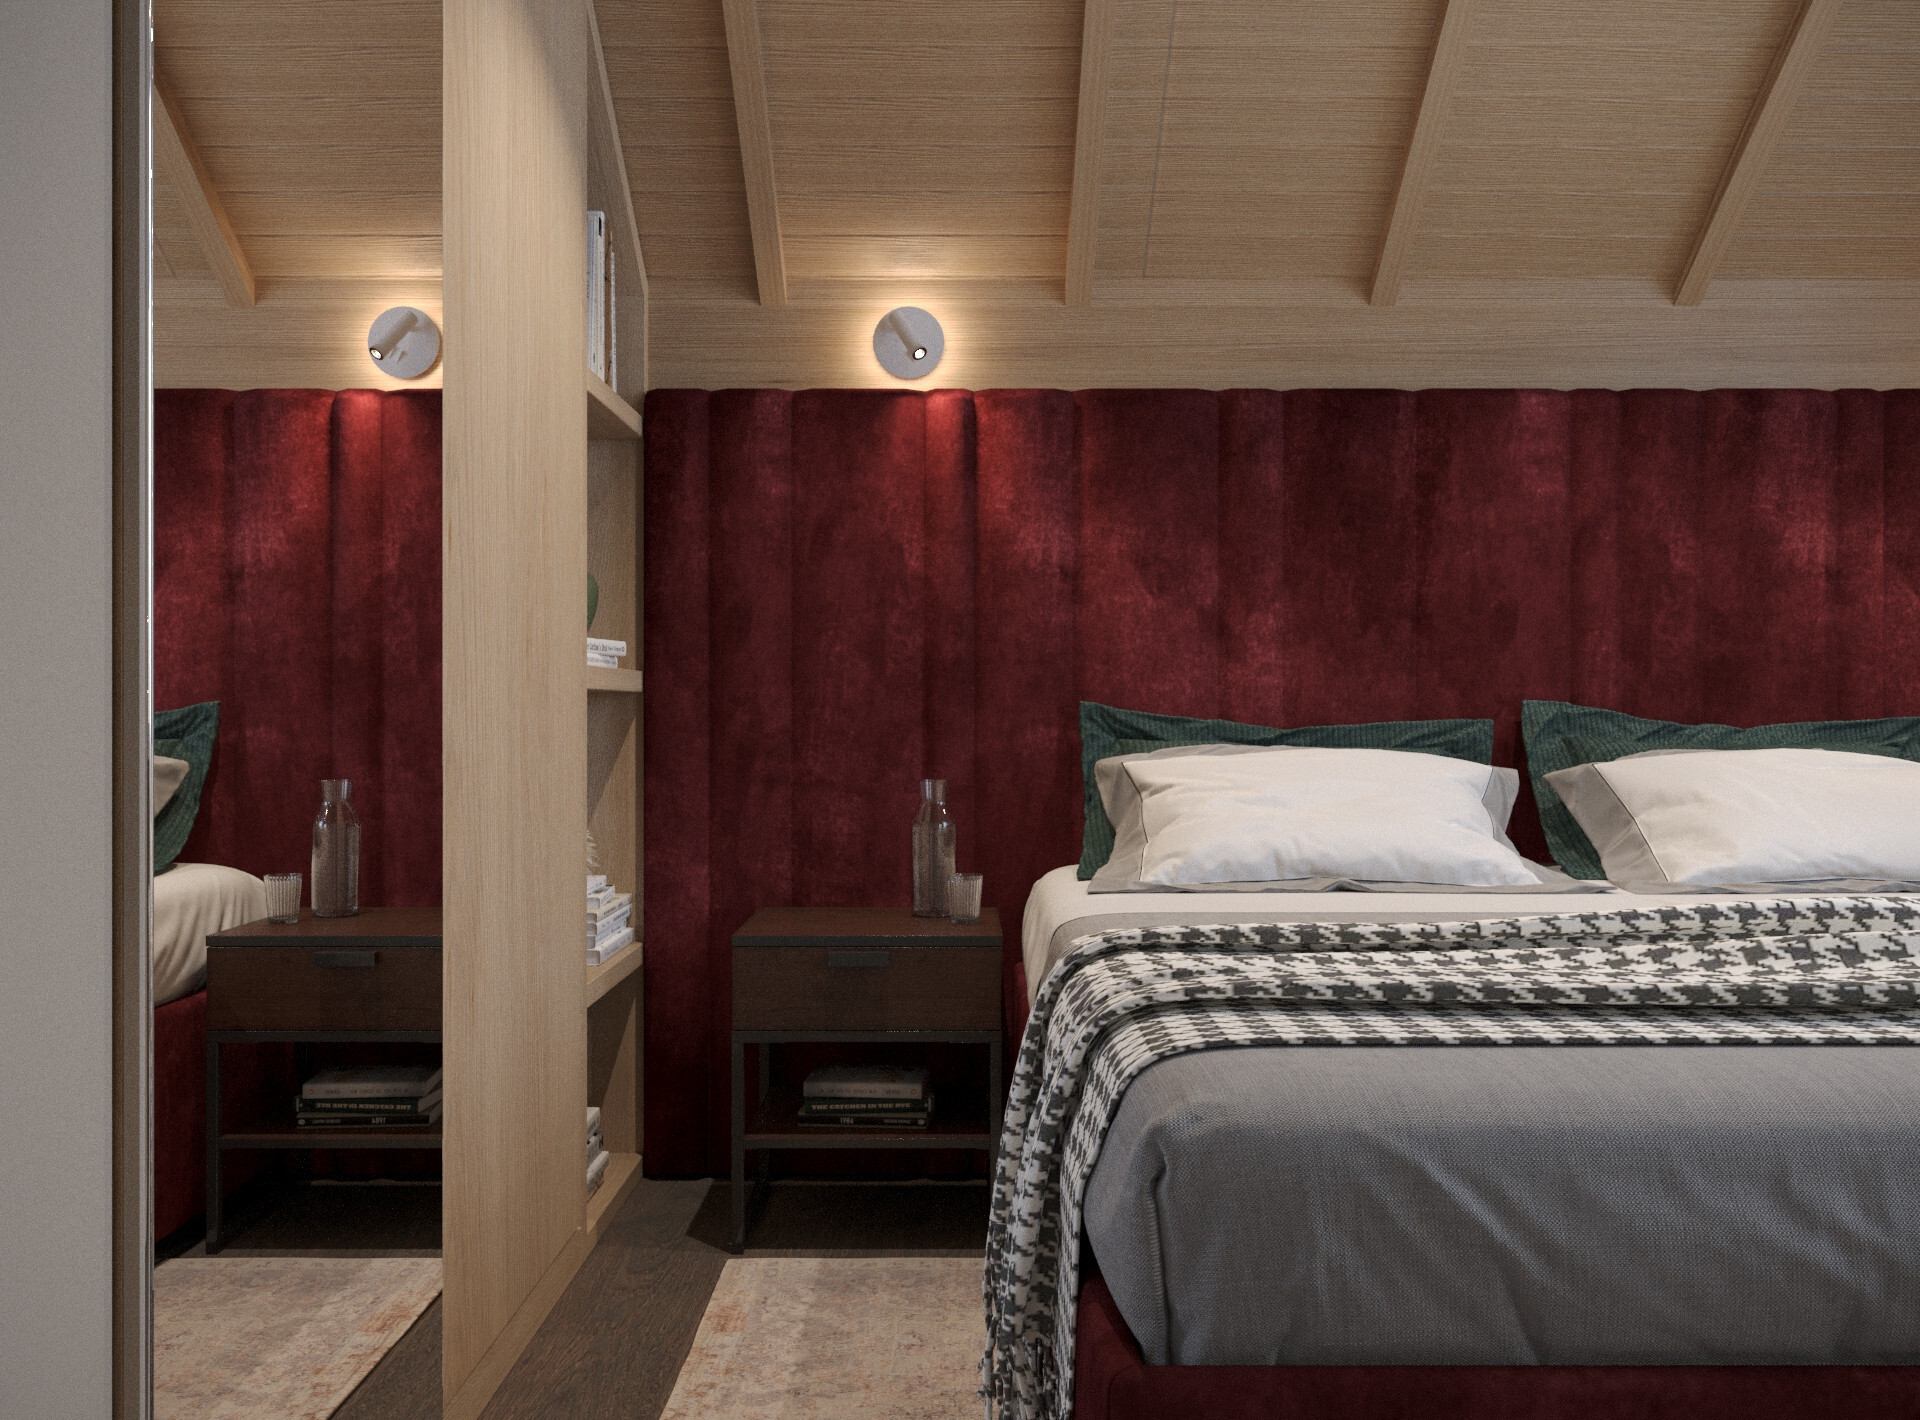 Интерьер спальни с подсветкой настенной, подсветкой светодиодной и светильниками над кроватью в стиле кантри